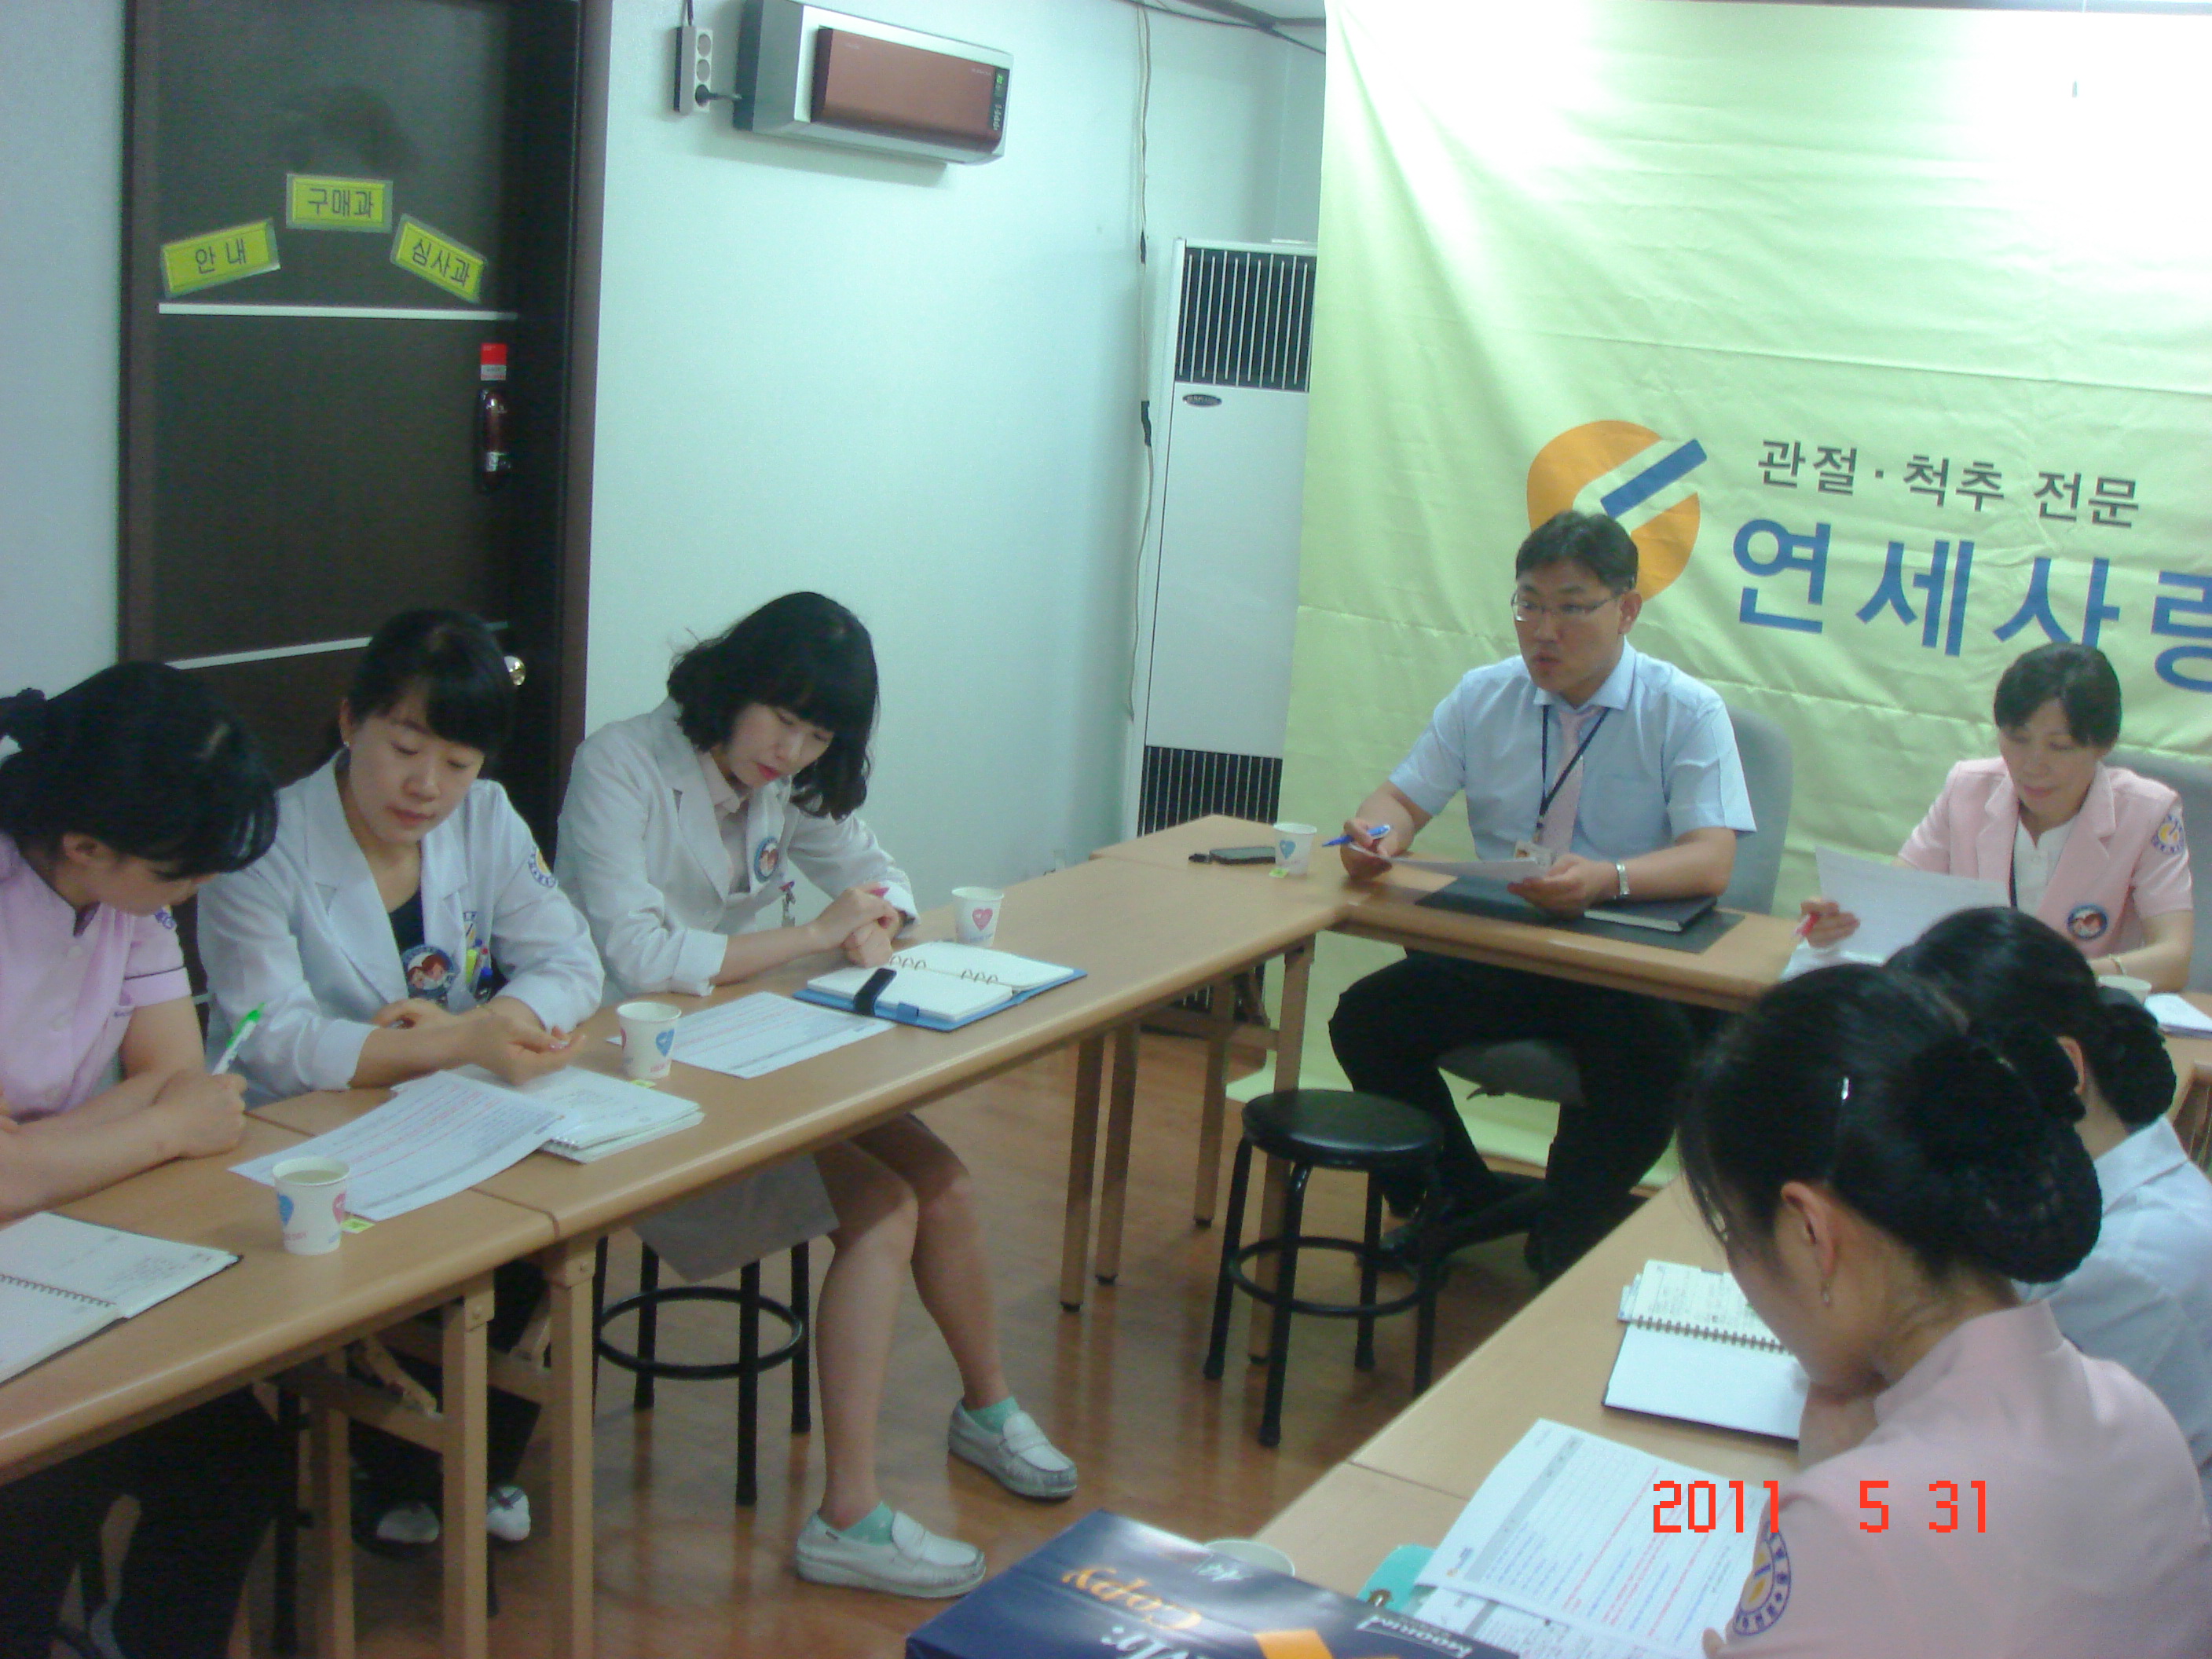 [강북점] 2011년 5월 31일 - 실무진 회의 개최 게시글의 4번째 첨부파일입니다.